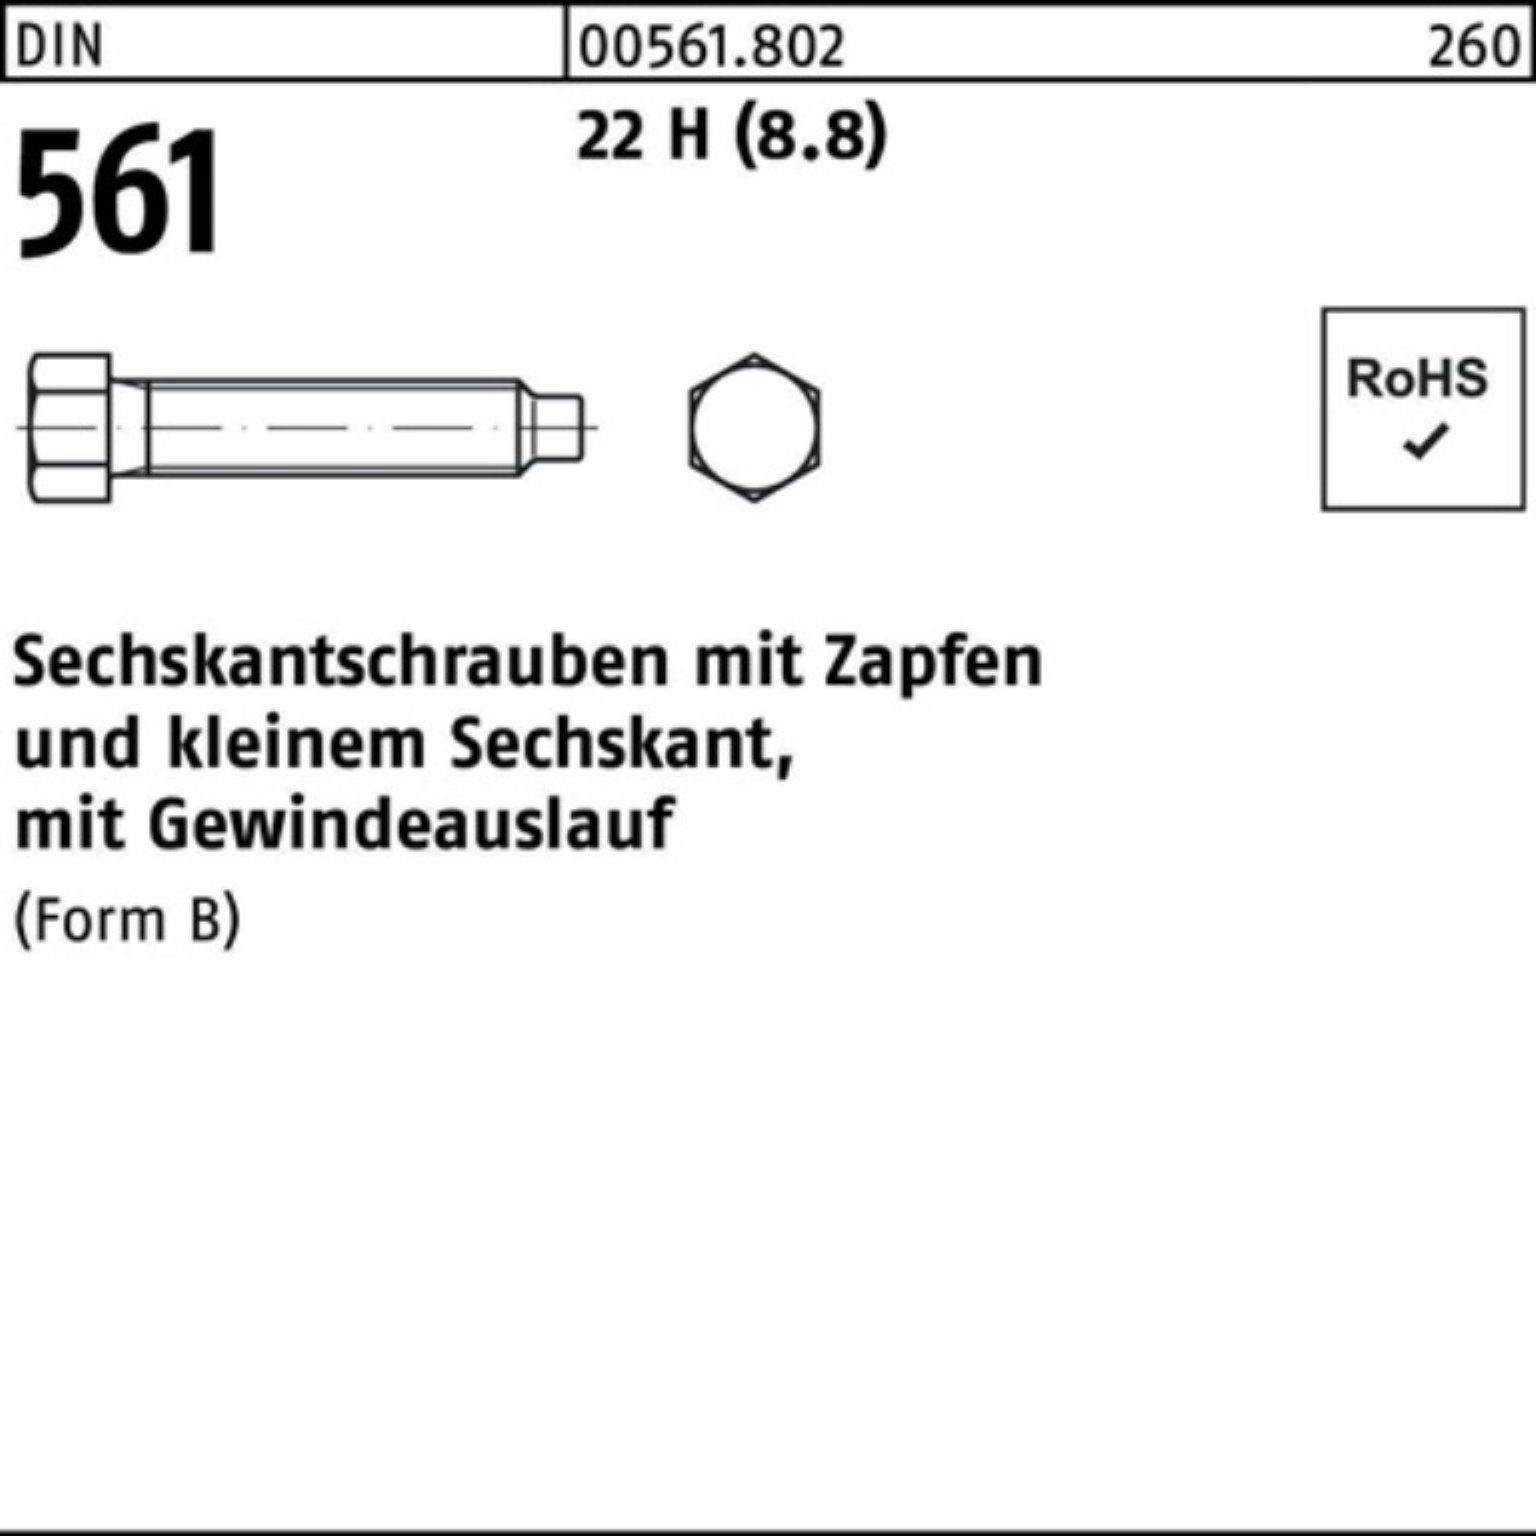 DIN BM 561 20 Sechskantschraube Sechskantschraube (8.8) Reyher Zapfen 8x H 100 Pack 22 St 100er